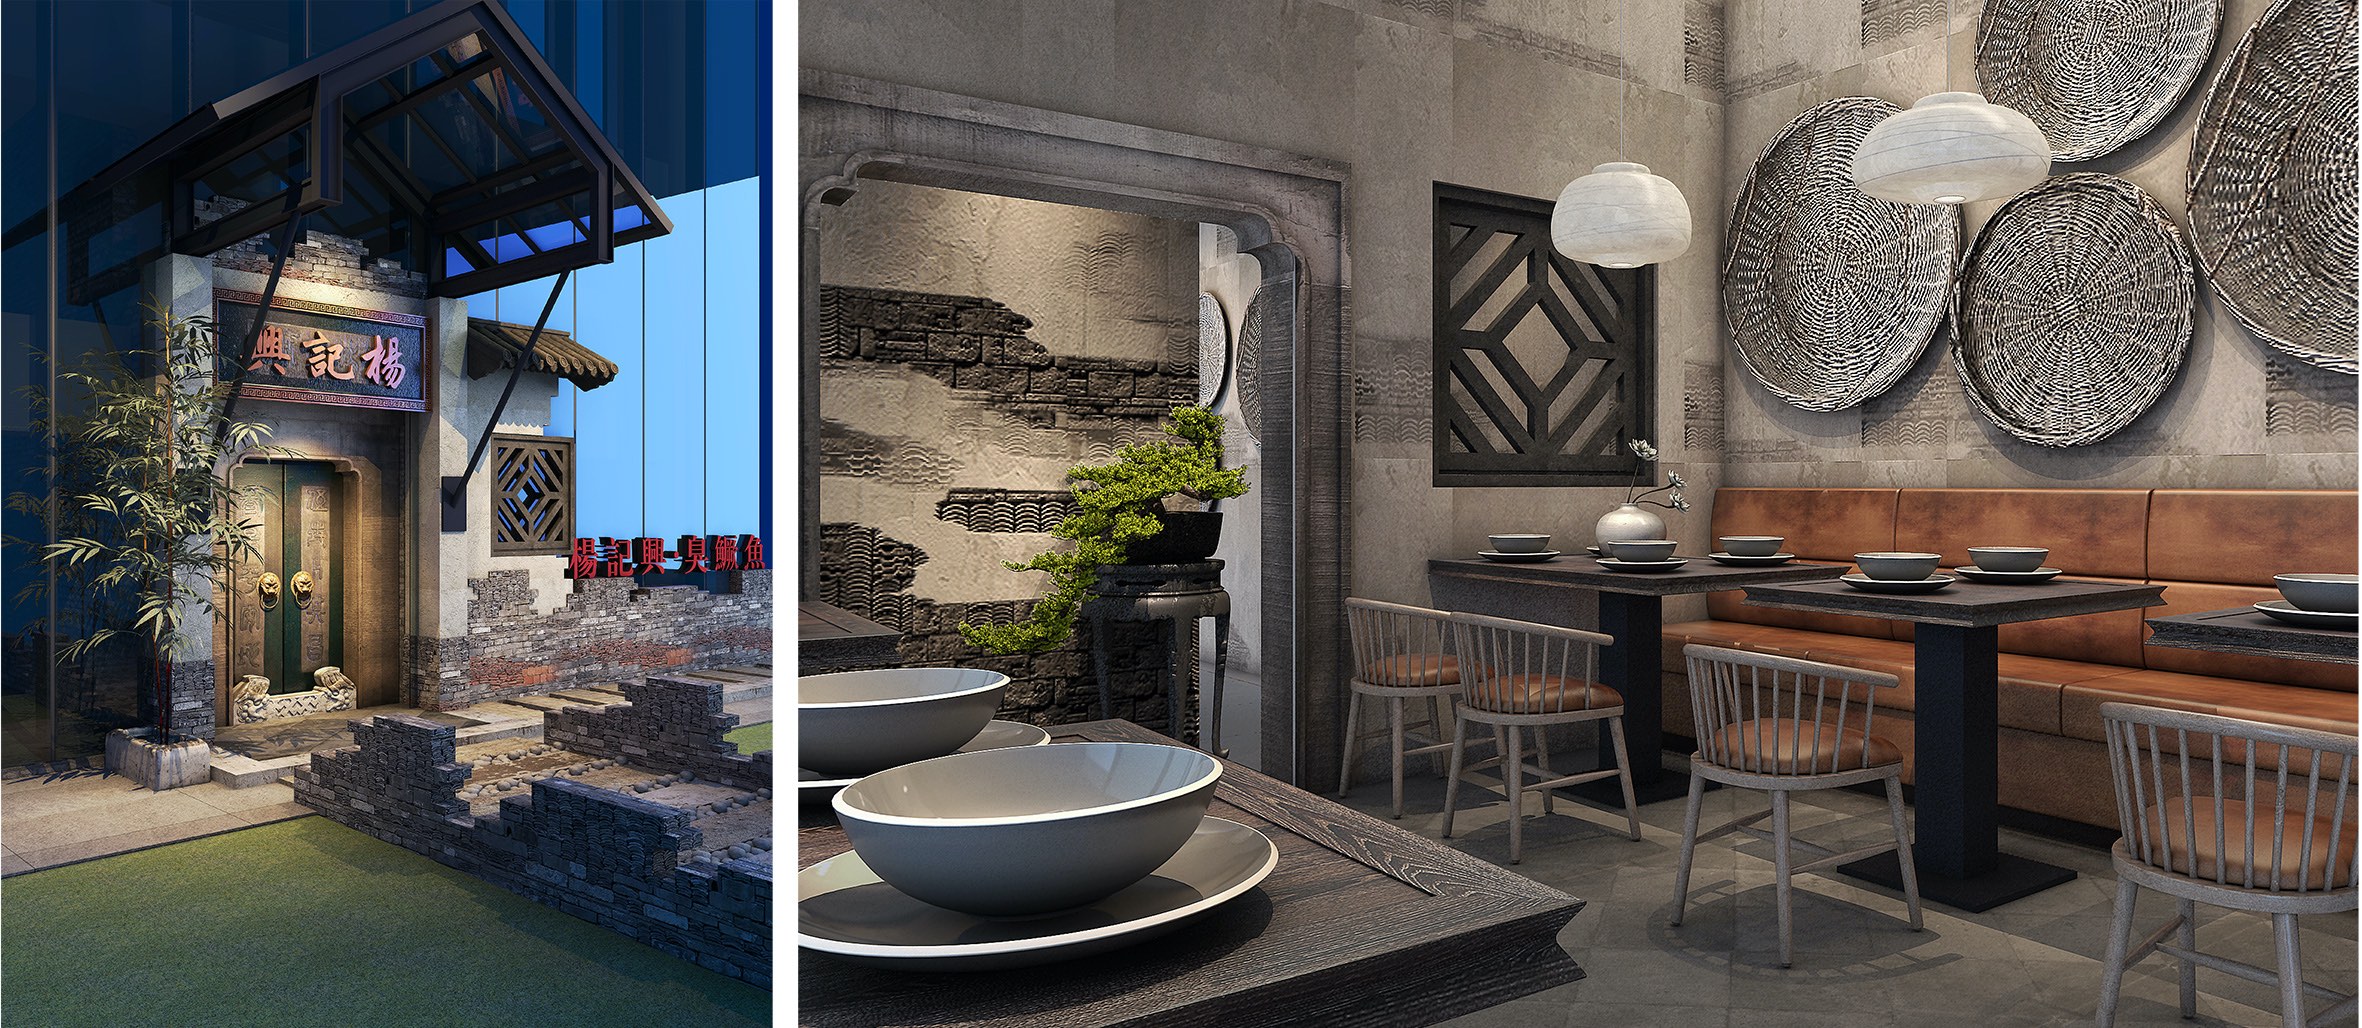 楊記興連鎖餐廳設計-餐廳設計-杭州達岸品牌策劃設計公司